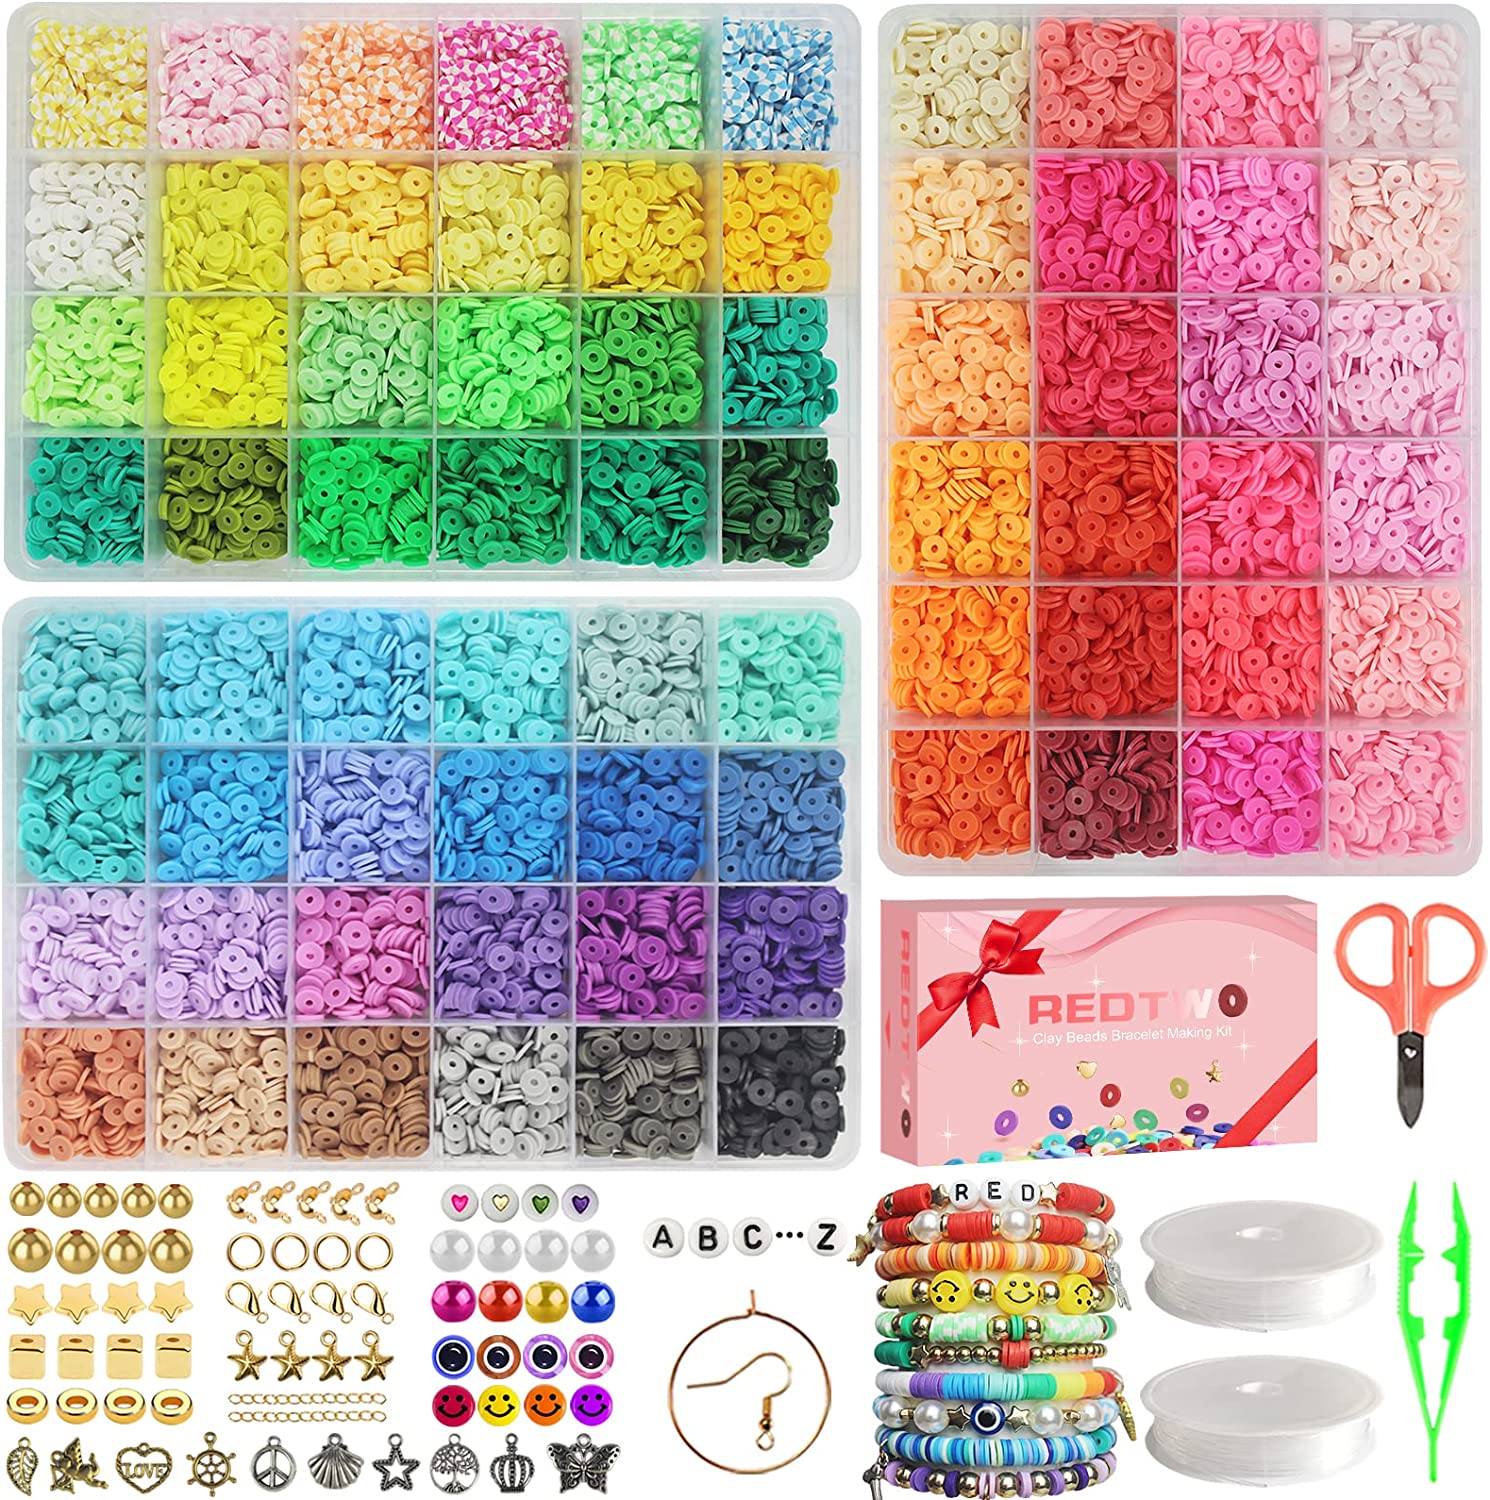  3500pcs Bracelet Making Kit, 48 Colors Pony Beads Set